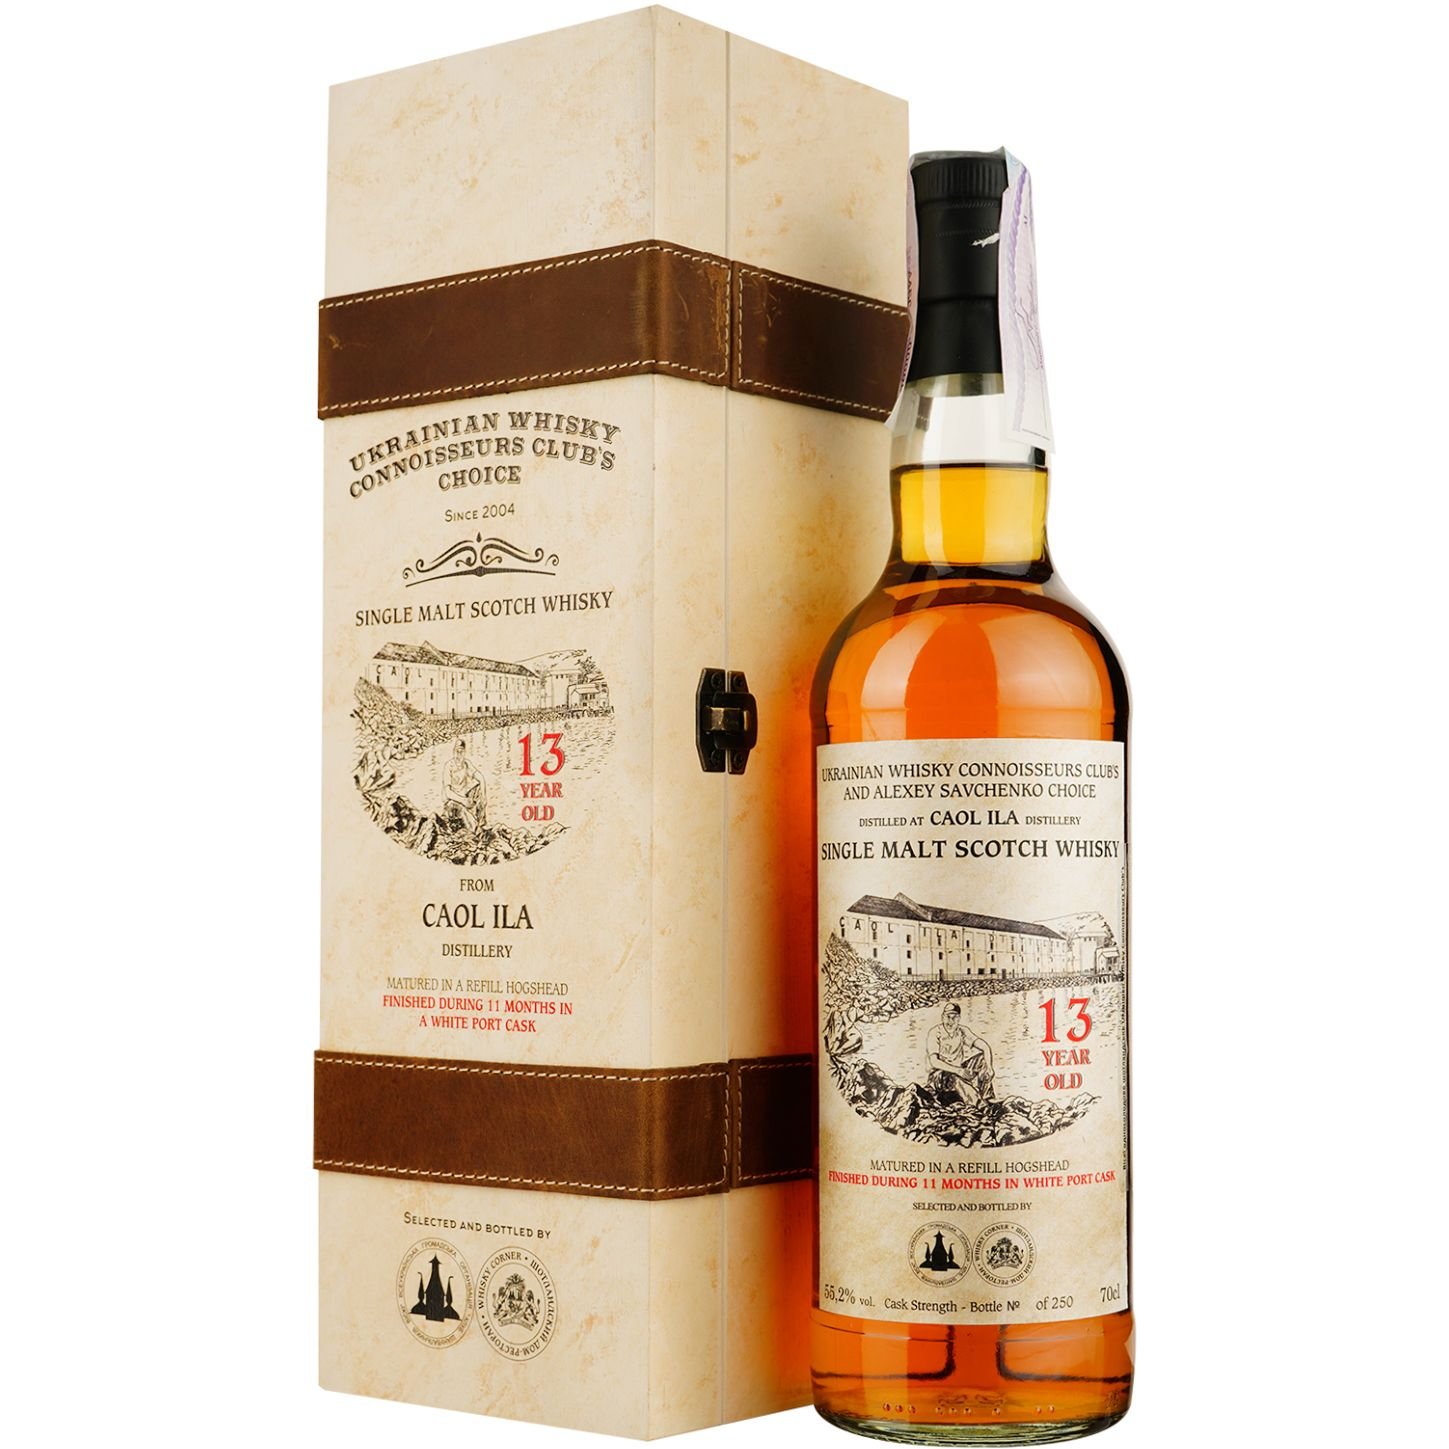 Віскі Caol Ila 13 Years Old White Porto Single Malt Scotch Whisky, у подарунковій упаковці, 55,2%, 0,7 л - фото 1